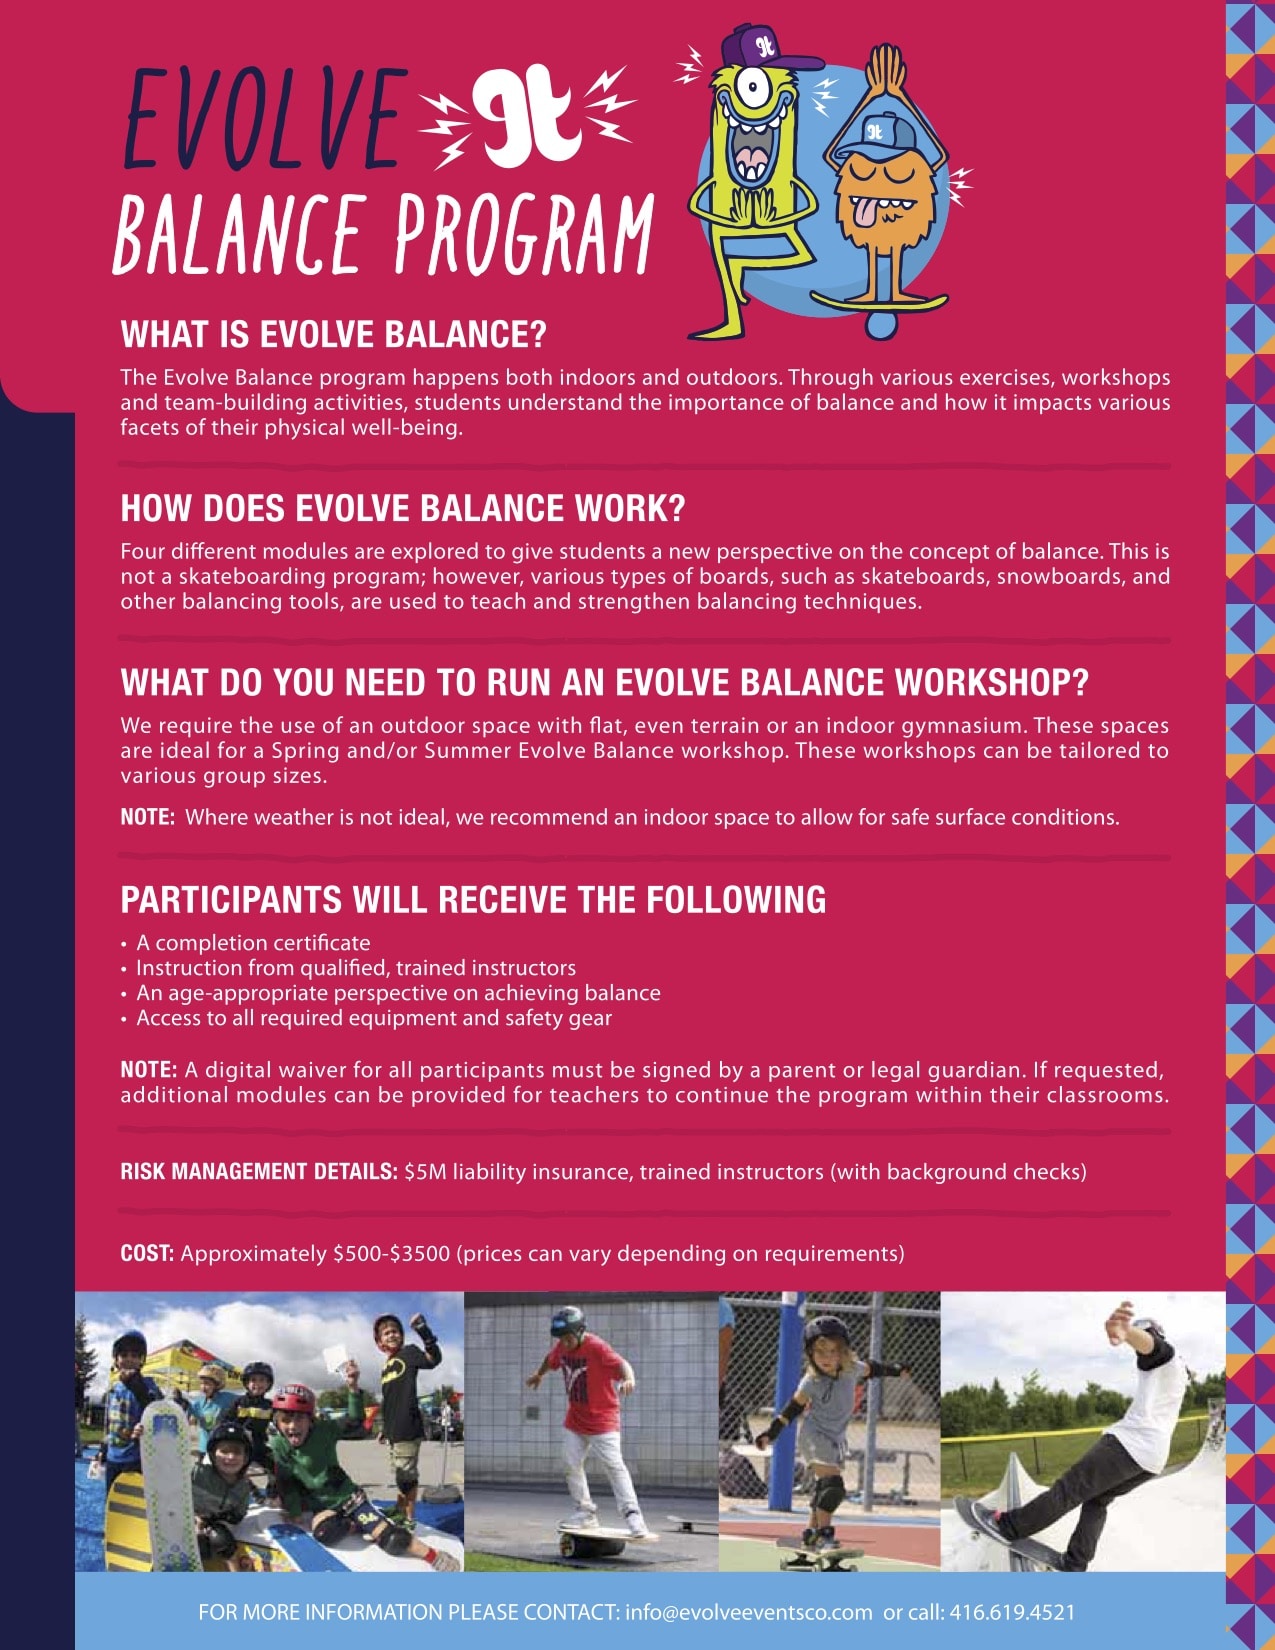 Balance Program - Balance Based Educational Program